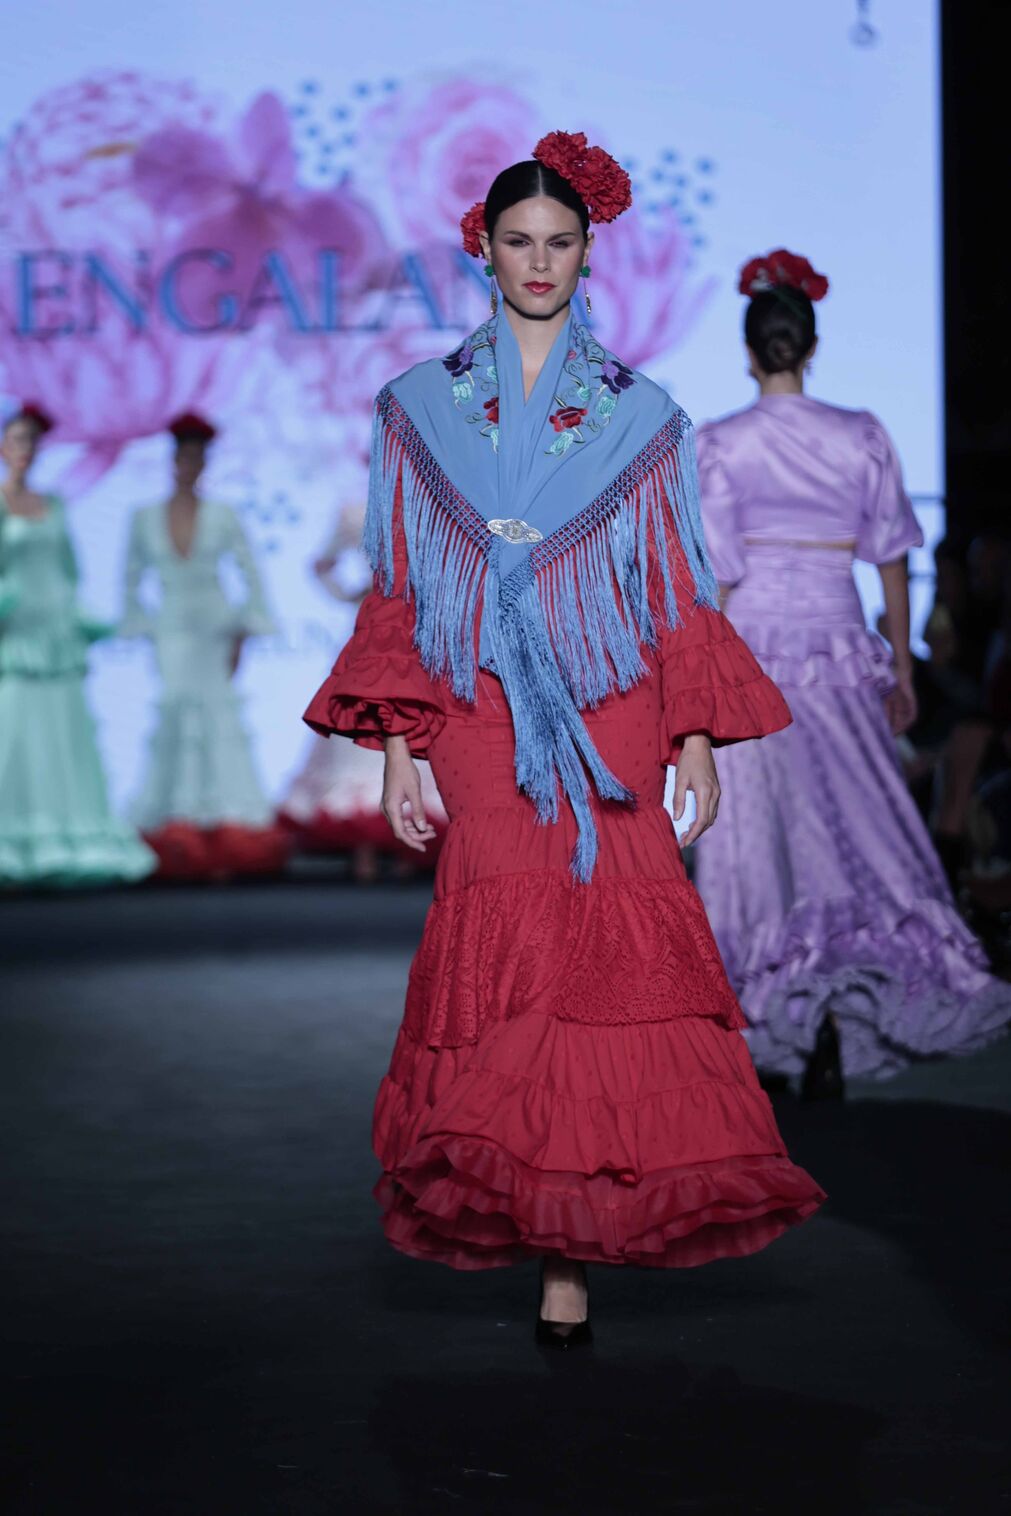 El desfile de Engalana en We Love Flamenco 2024, todas las fotos